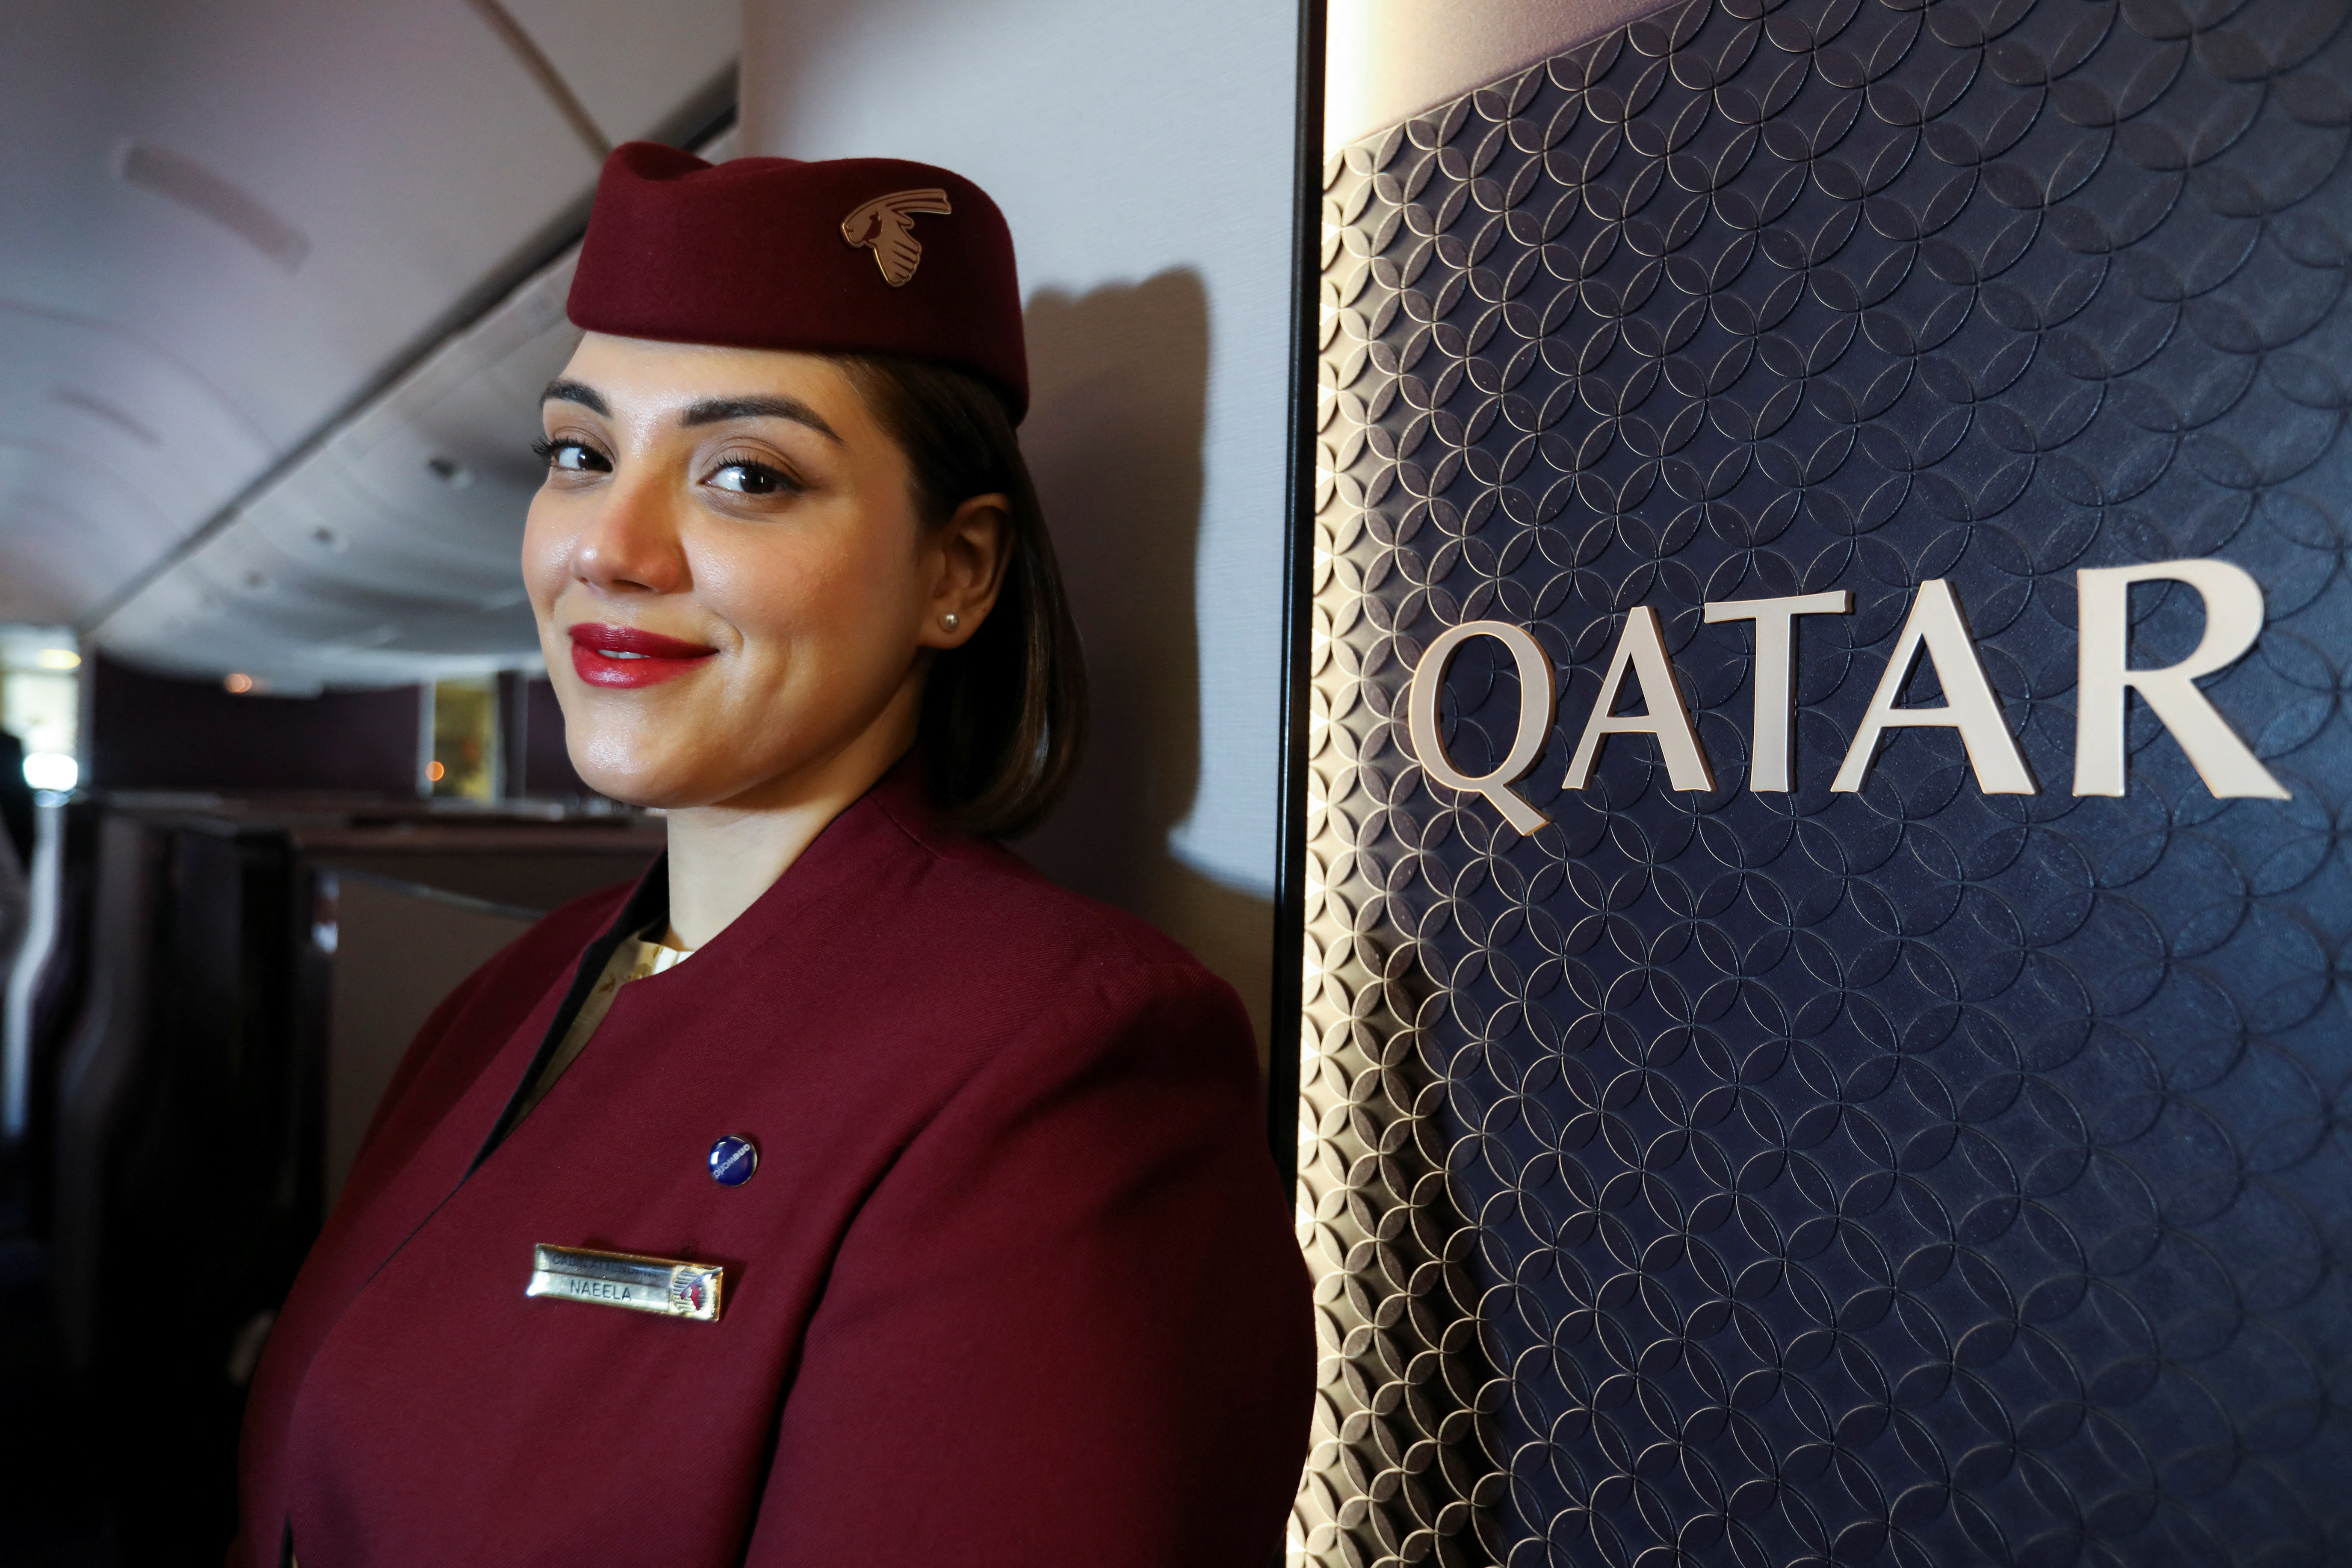 La aerolínea Qatar contratará a más de 3.000 tripulantes de cabina en todo el mundo